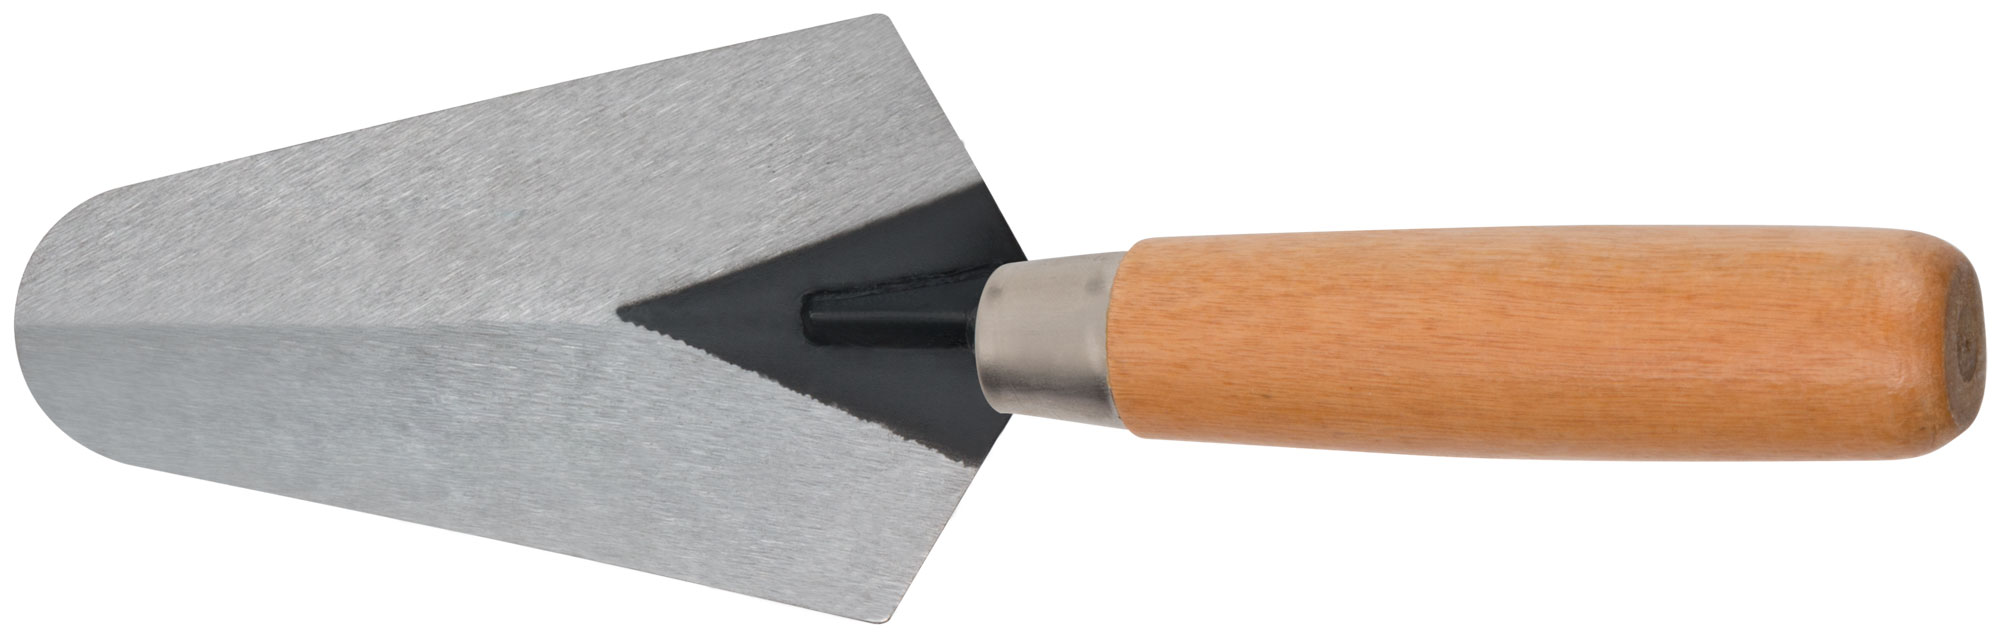 Кельма бетонщика, инструментальная сталь, деревянная ручка 160 мм